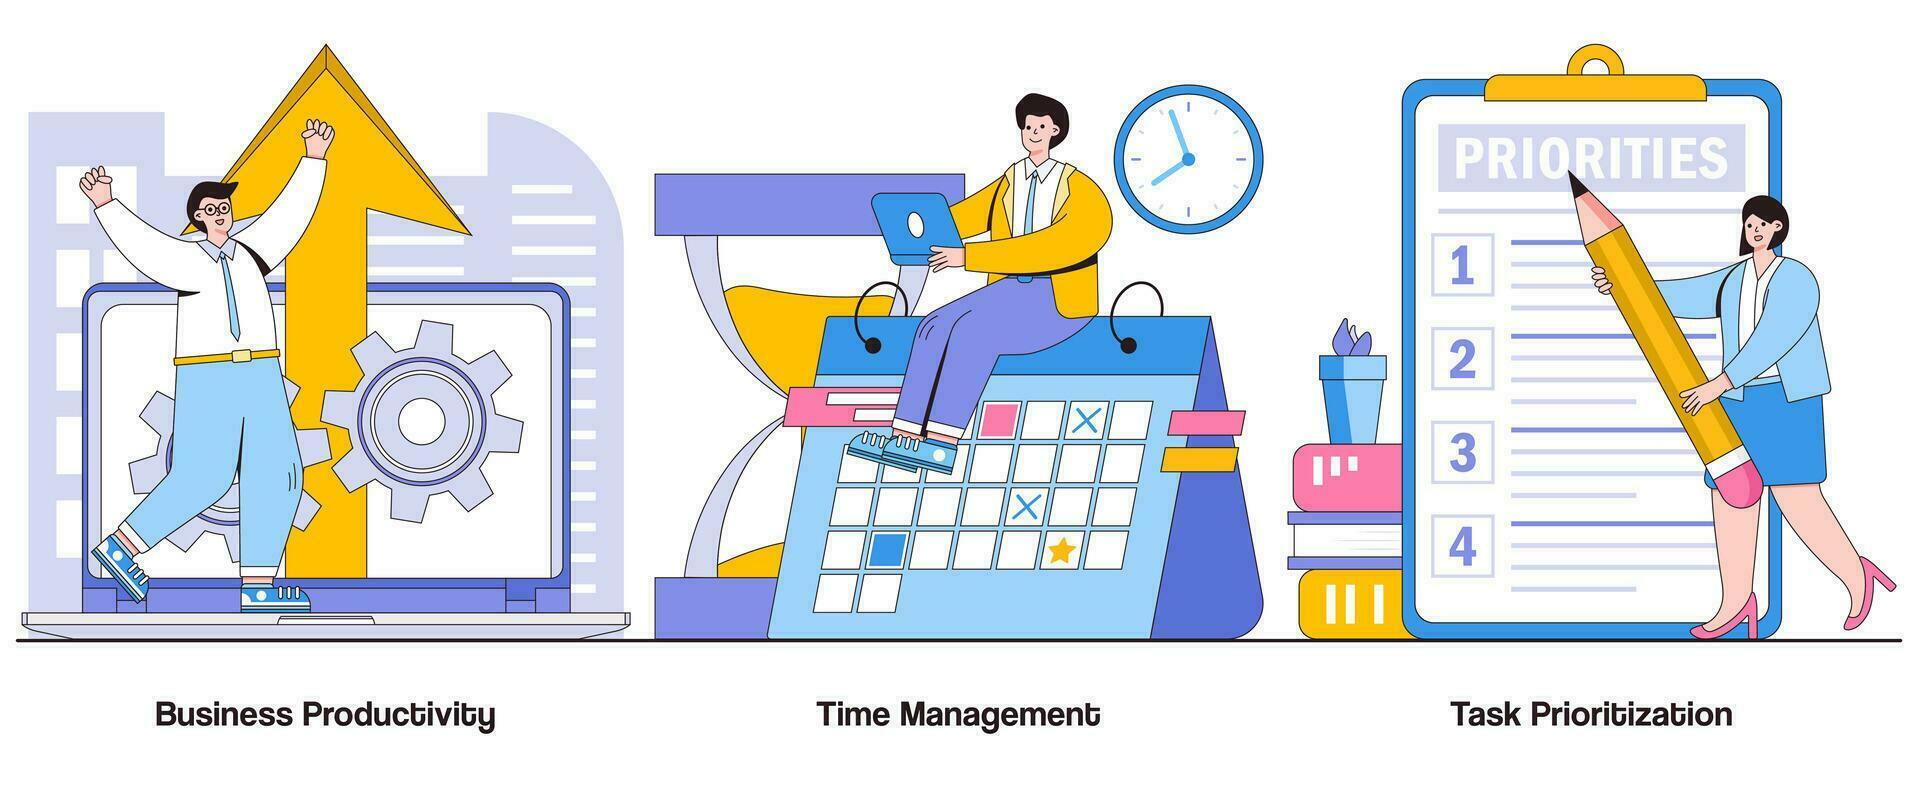 företag produktivitet, tid förvaltning, uppgift prioritering begrepp med karaktär. produktivitet optimering abstrakt vektor illustration uppsättning. effektivitet hackar, arbetsflöde förvaltning liknelse